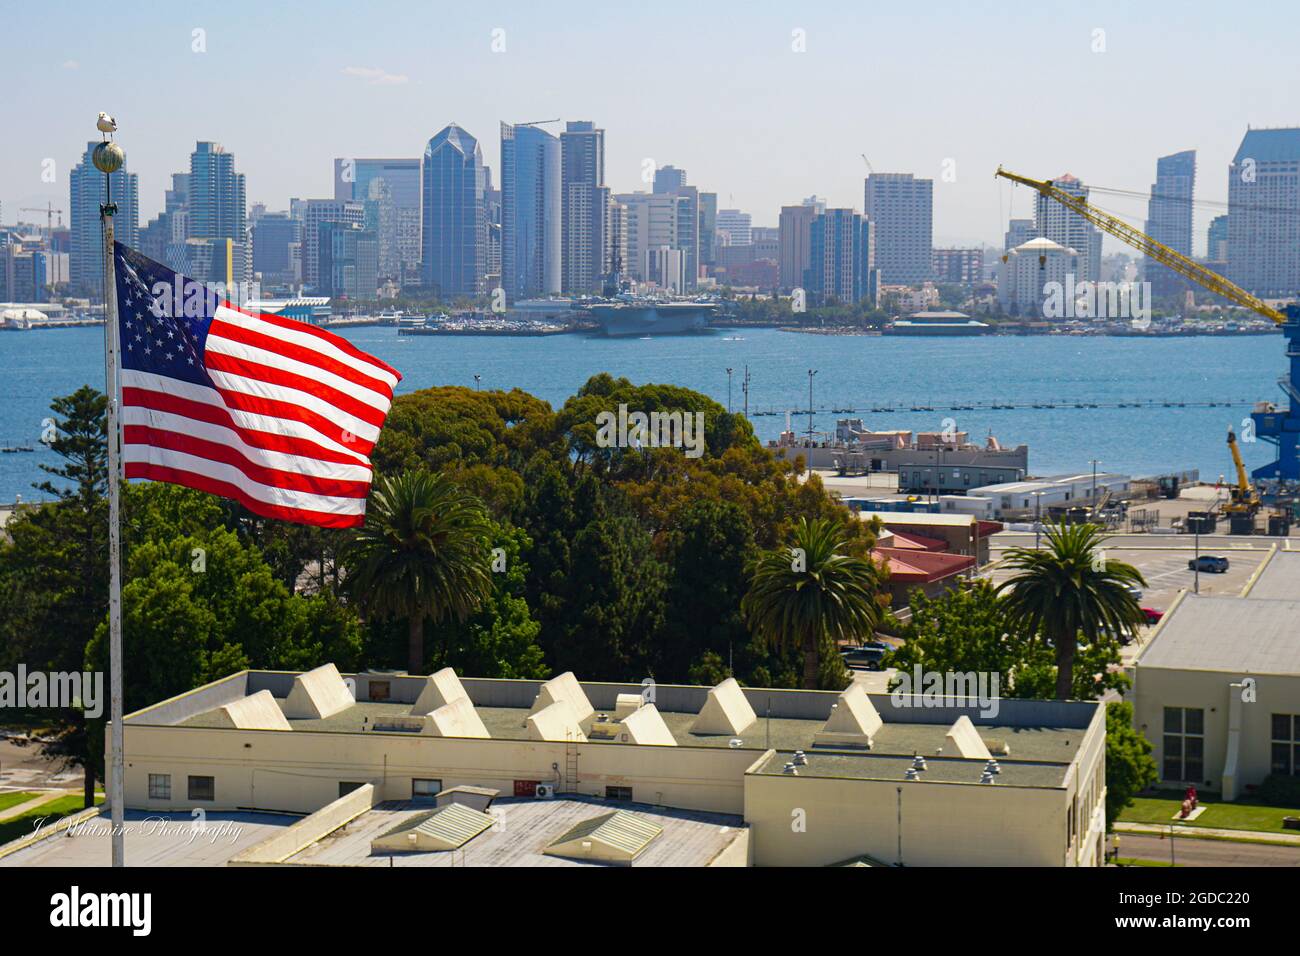 Die Innenstadt von San Diego, von der North Island Naval Air Station aus gesehen, bietet einen großartigen Blick auf hohe Gebäude und das USS Midway Museum Stockfoto